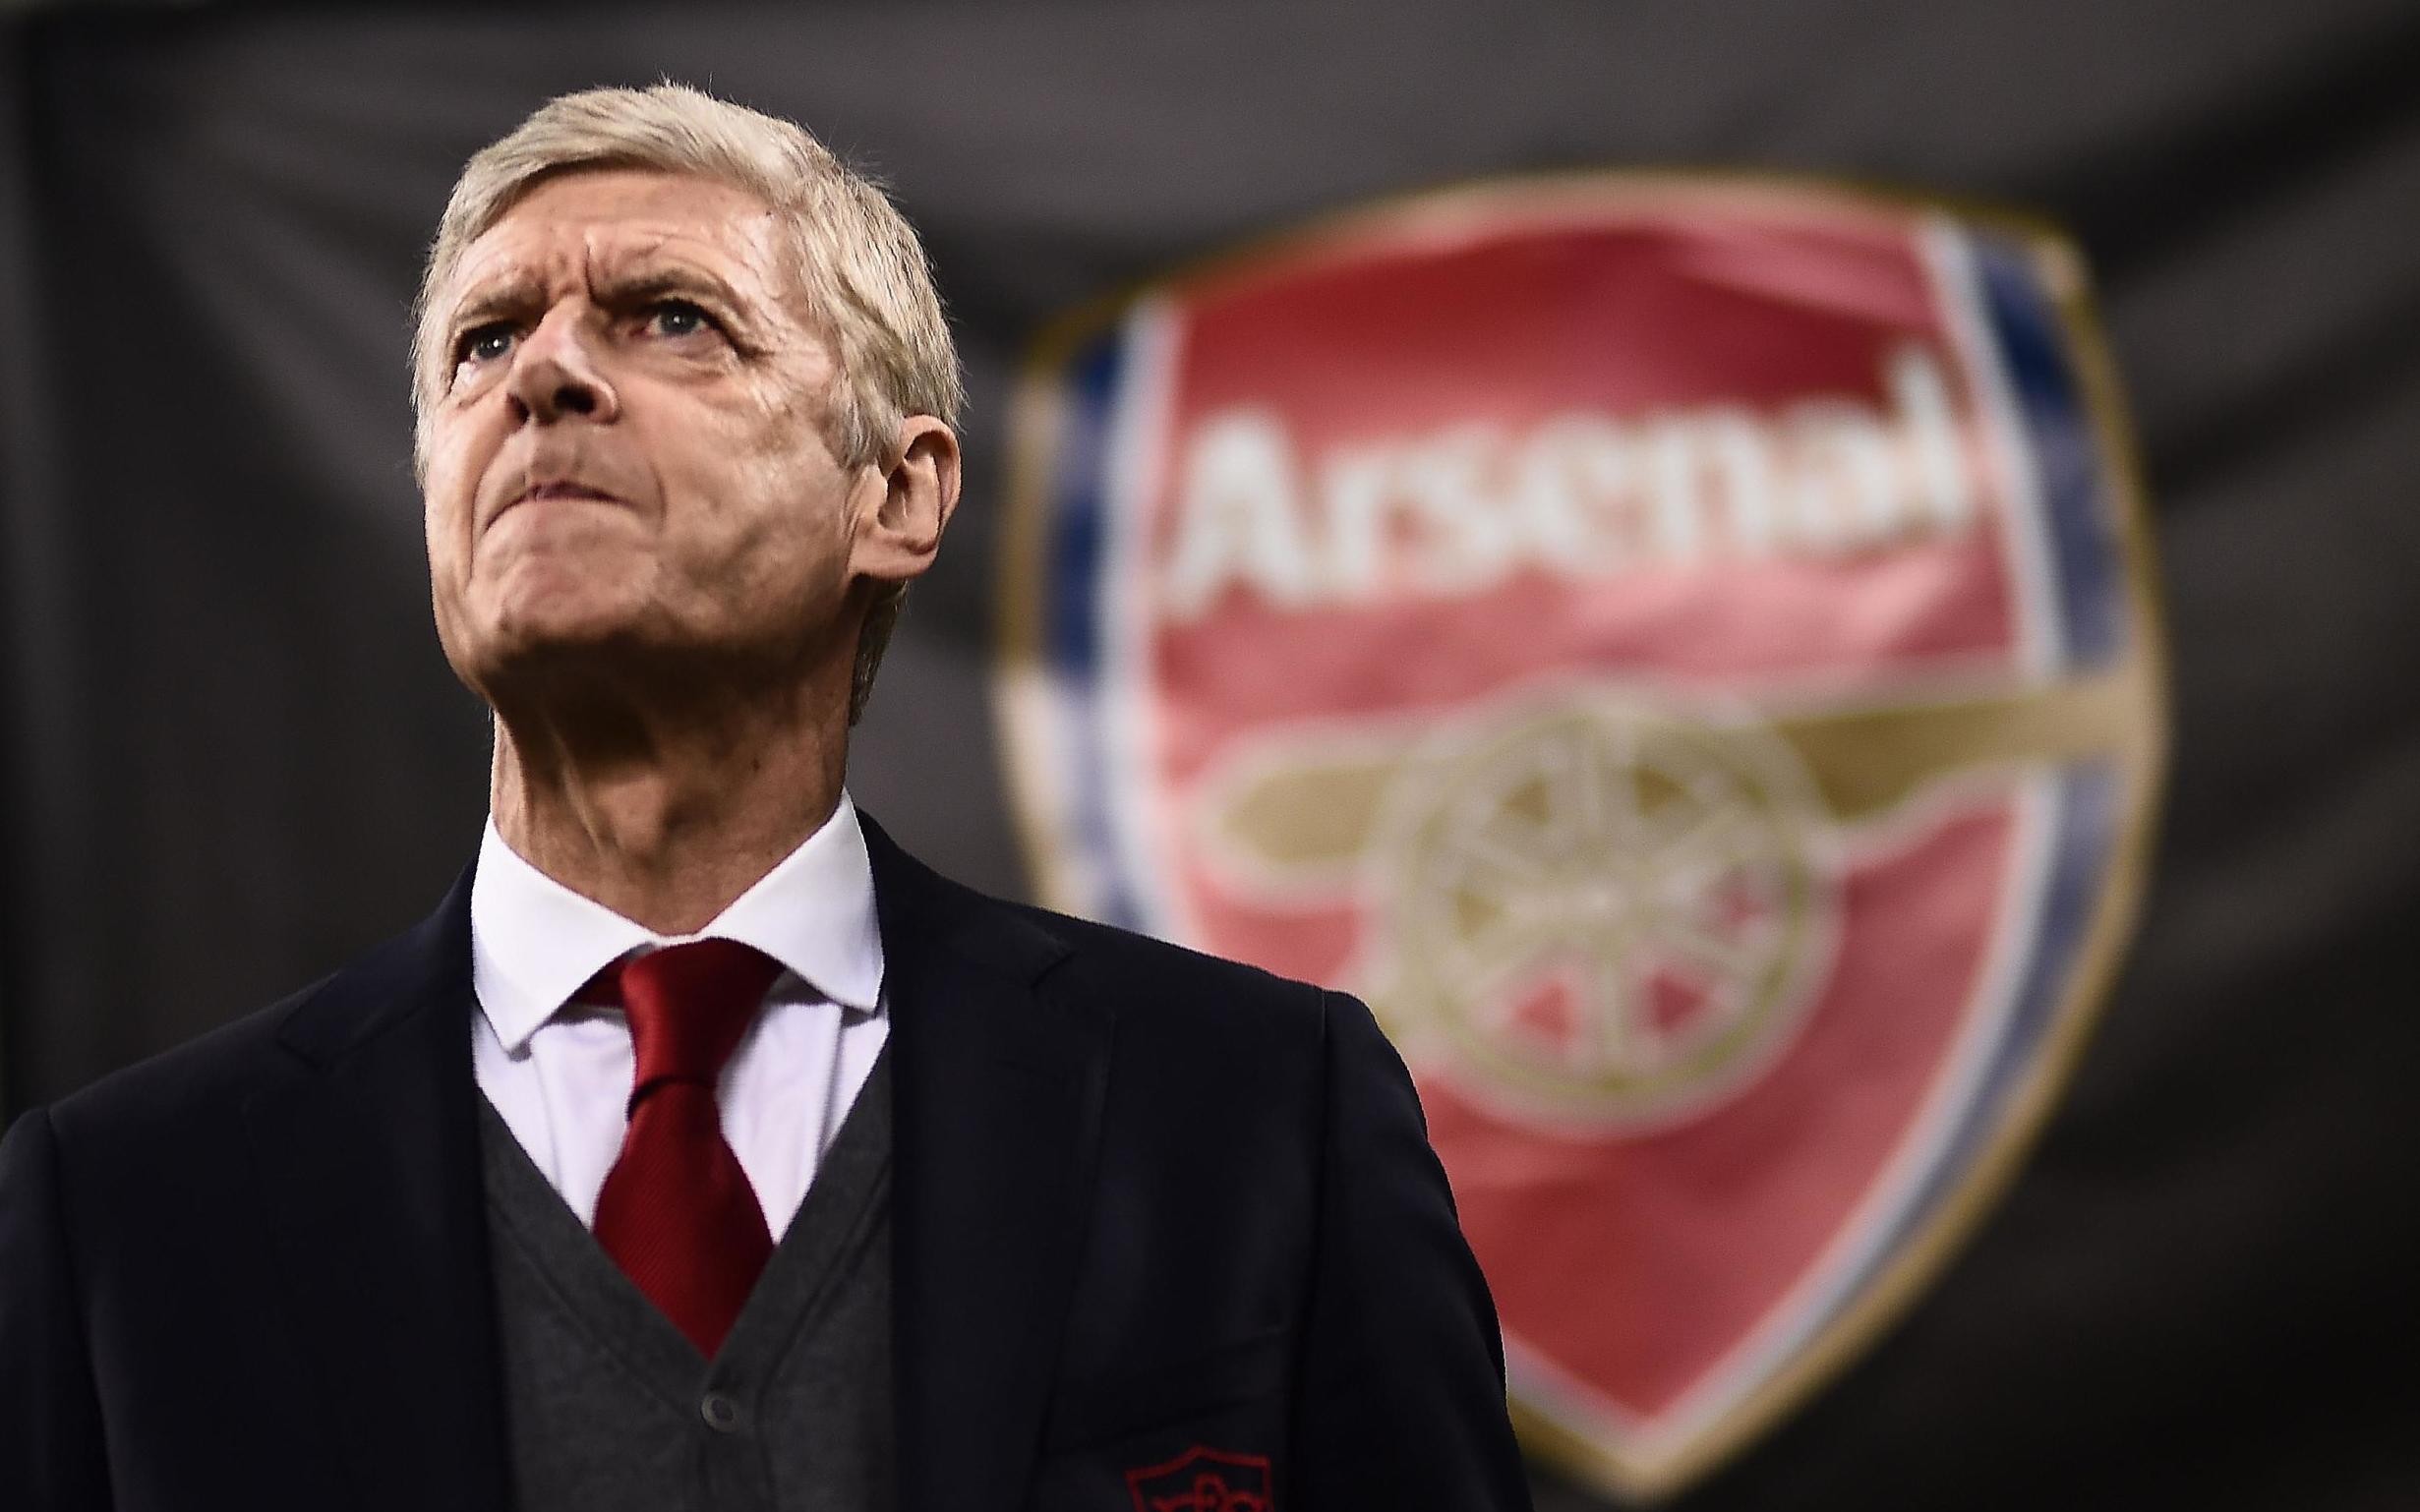 Arsenal đón Wenger và Cazorla trở lại Emirates trong trận farewell - Bóng Đá